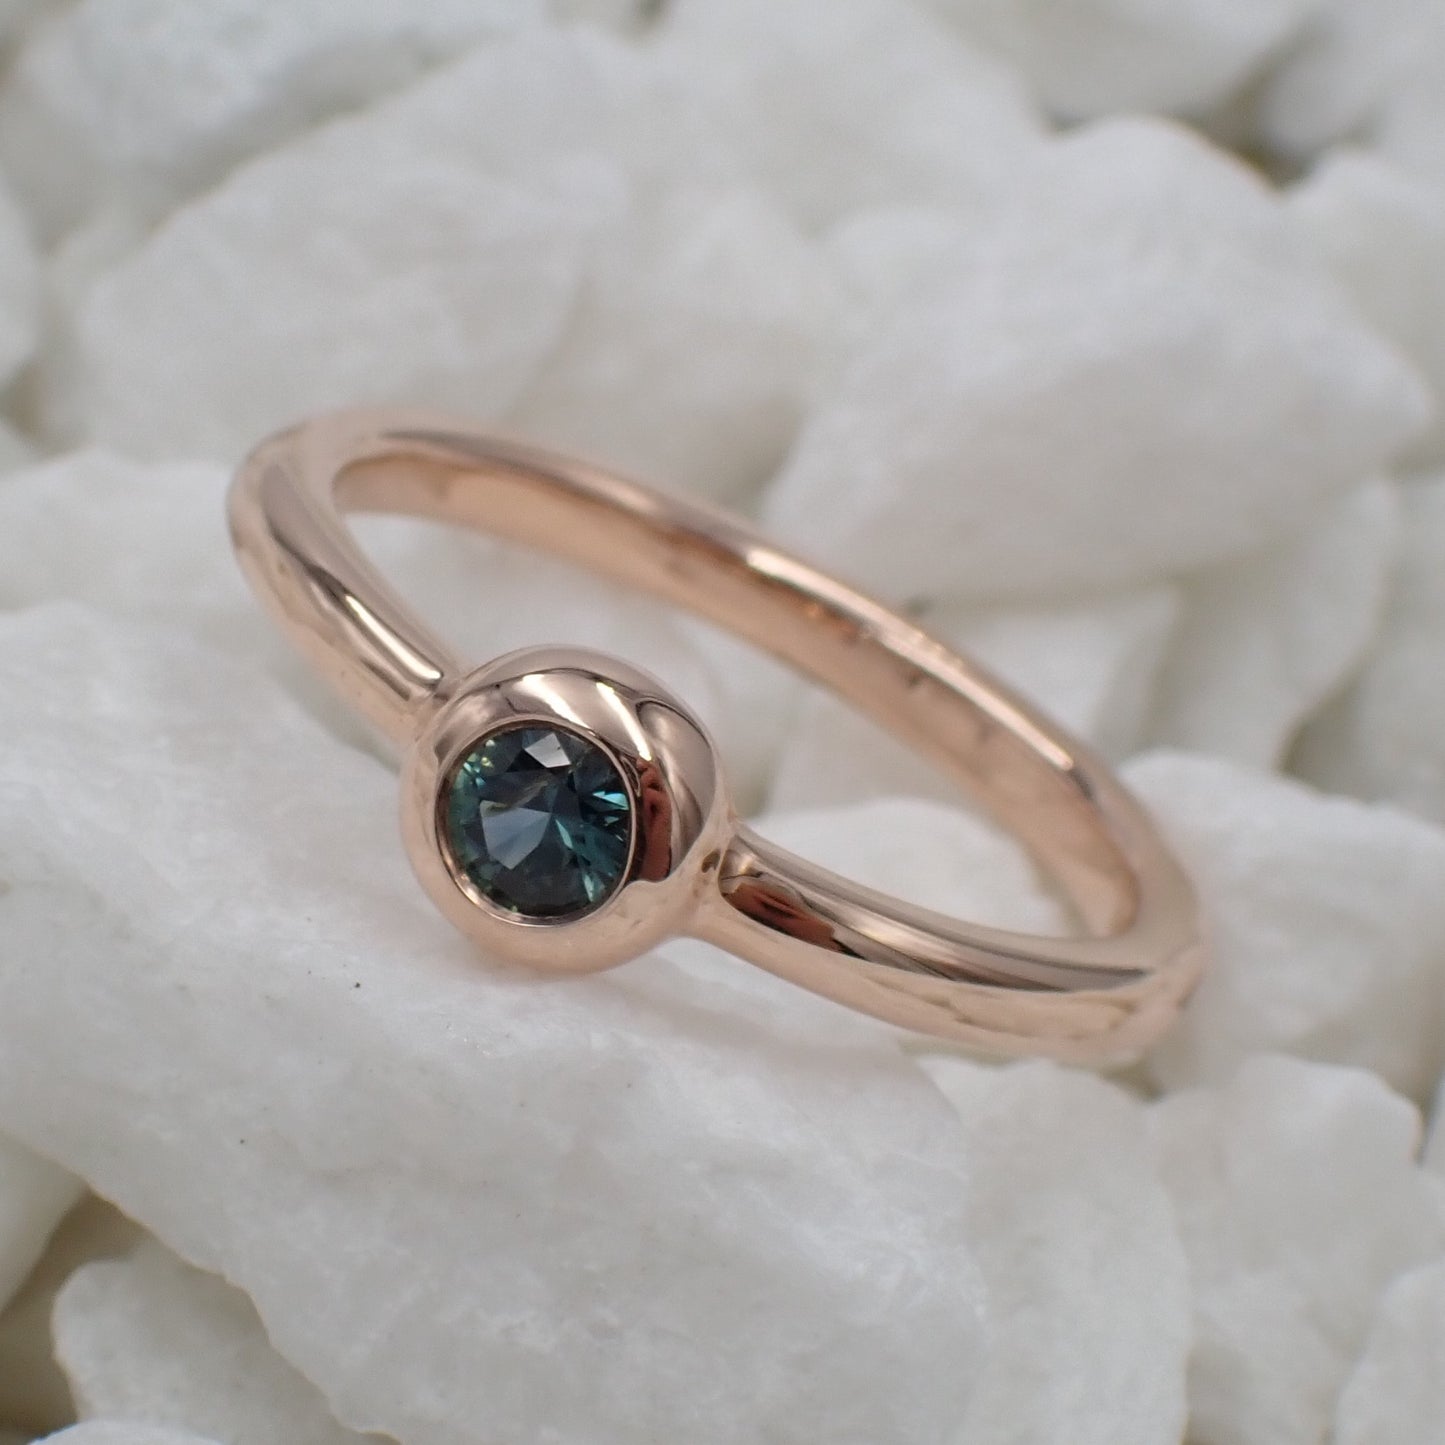 Australian Teal Sapphire Ring - 9K Gold